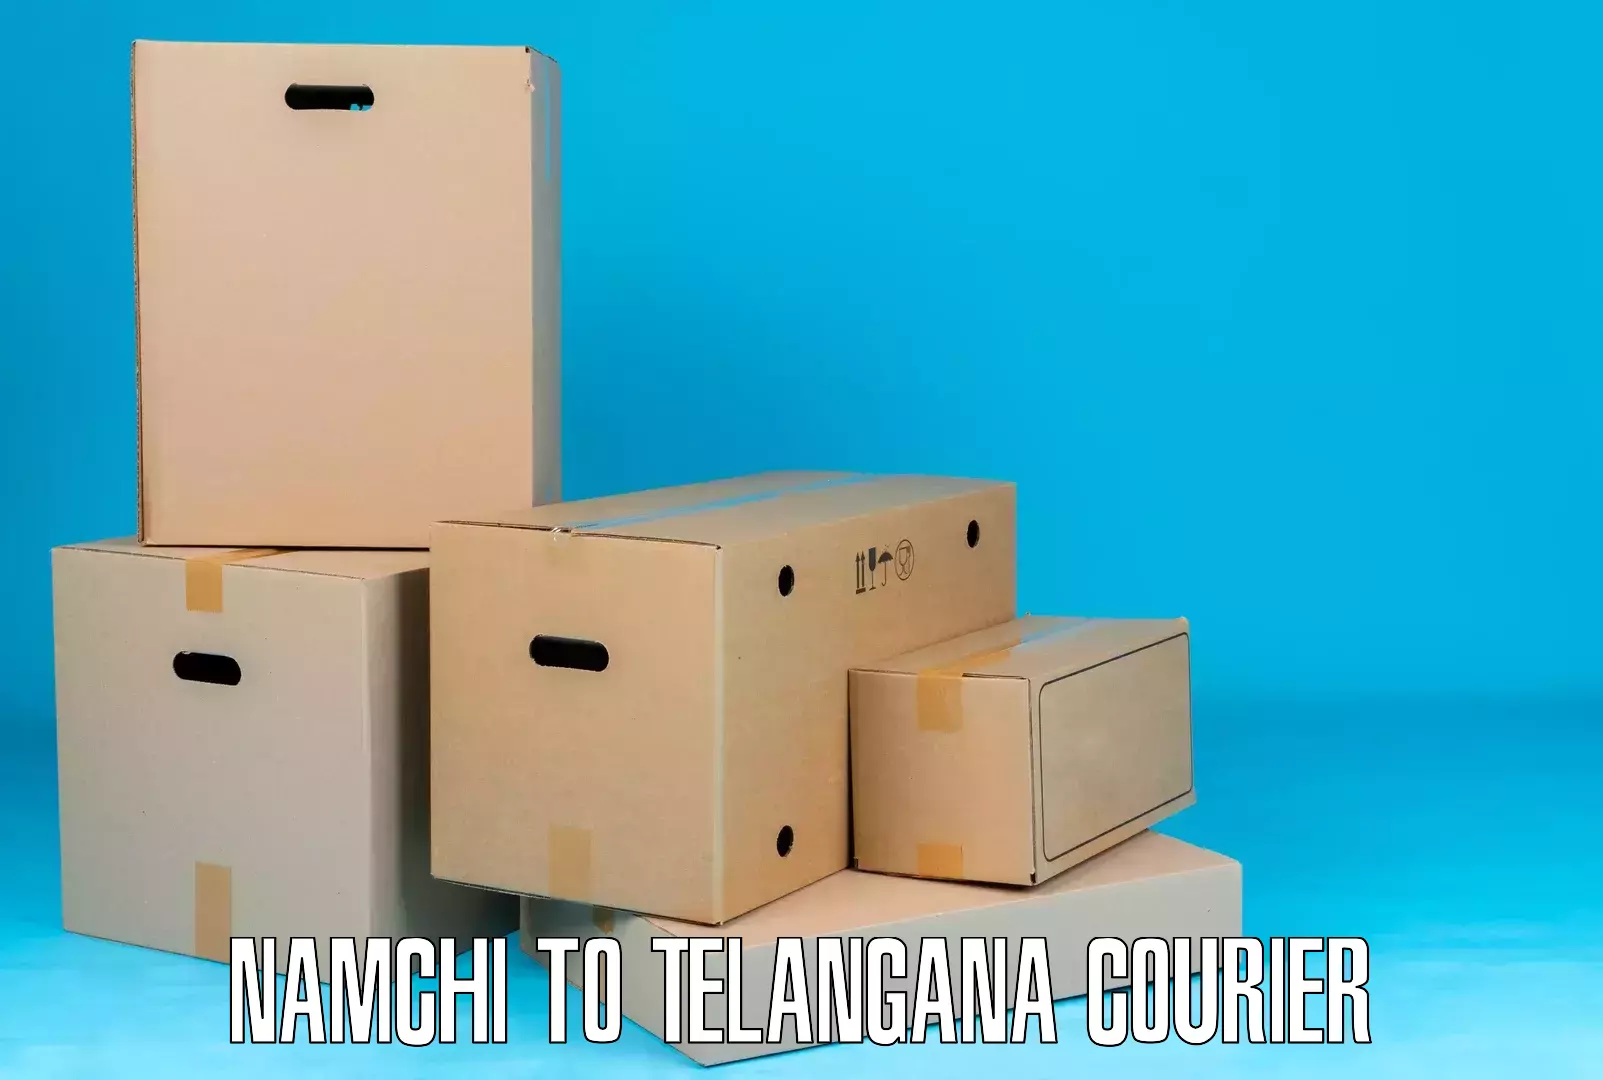 Affordable parcel service Namchi to Jogipet